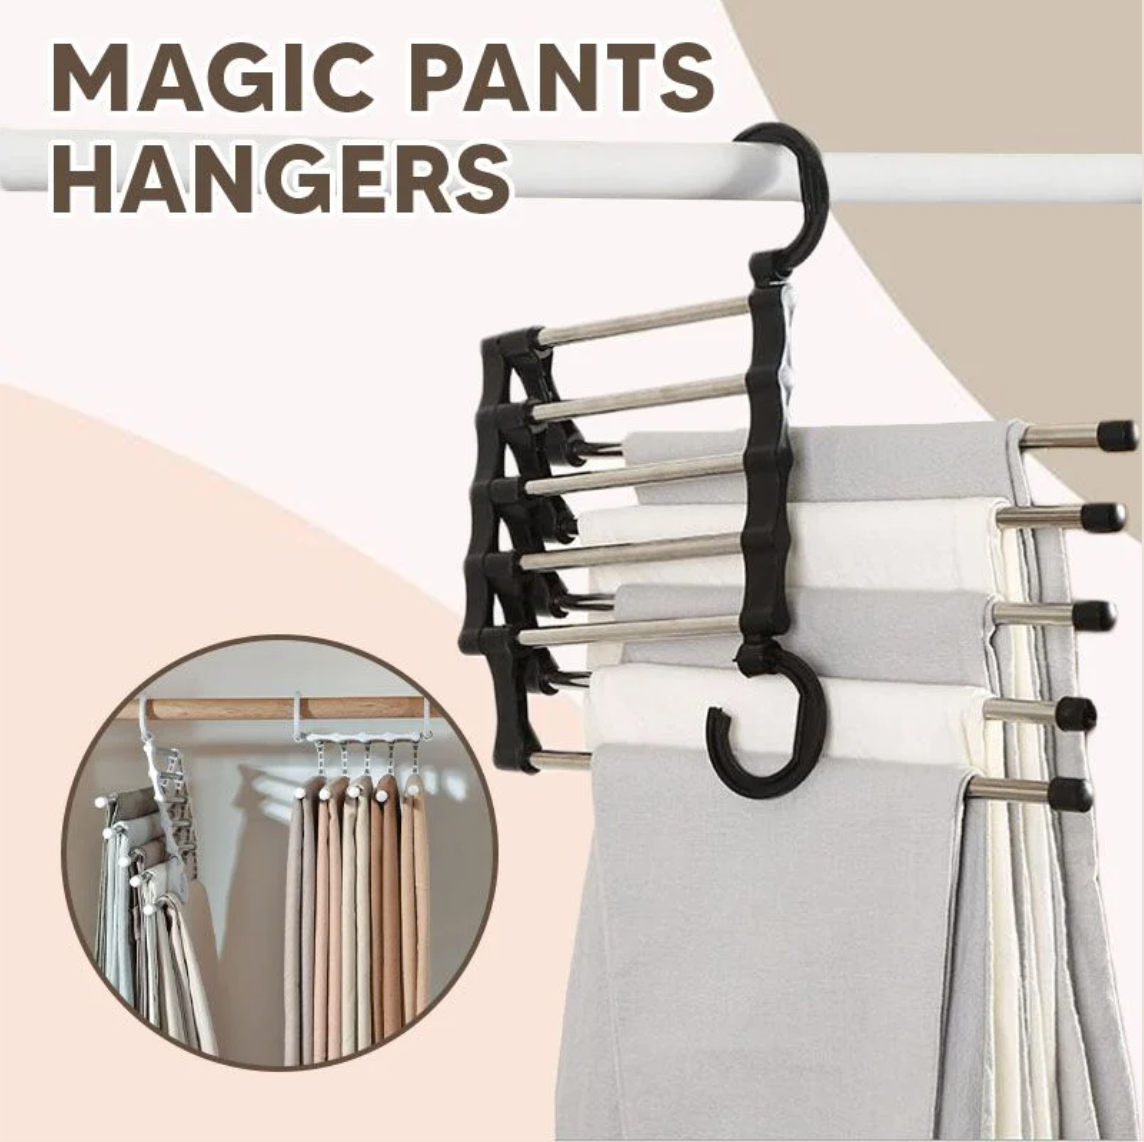 Magic Pants Hangers